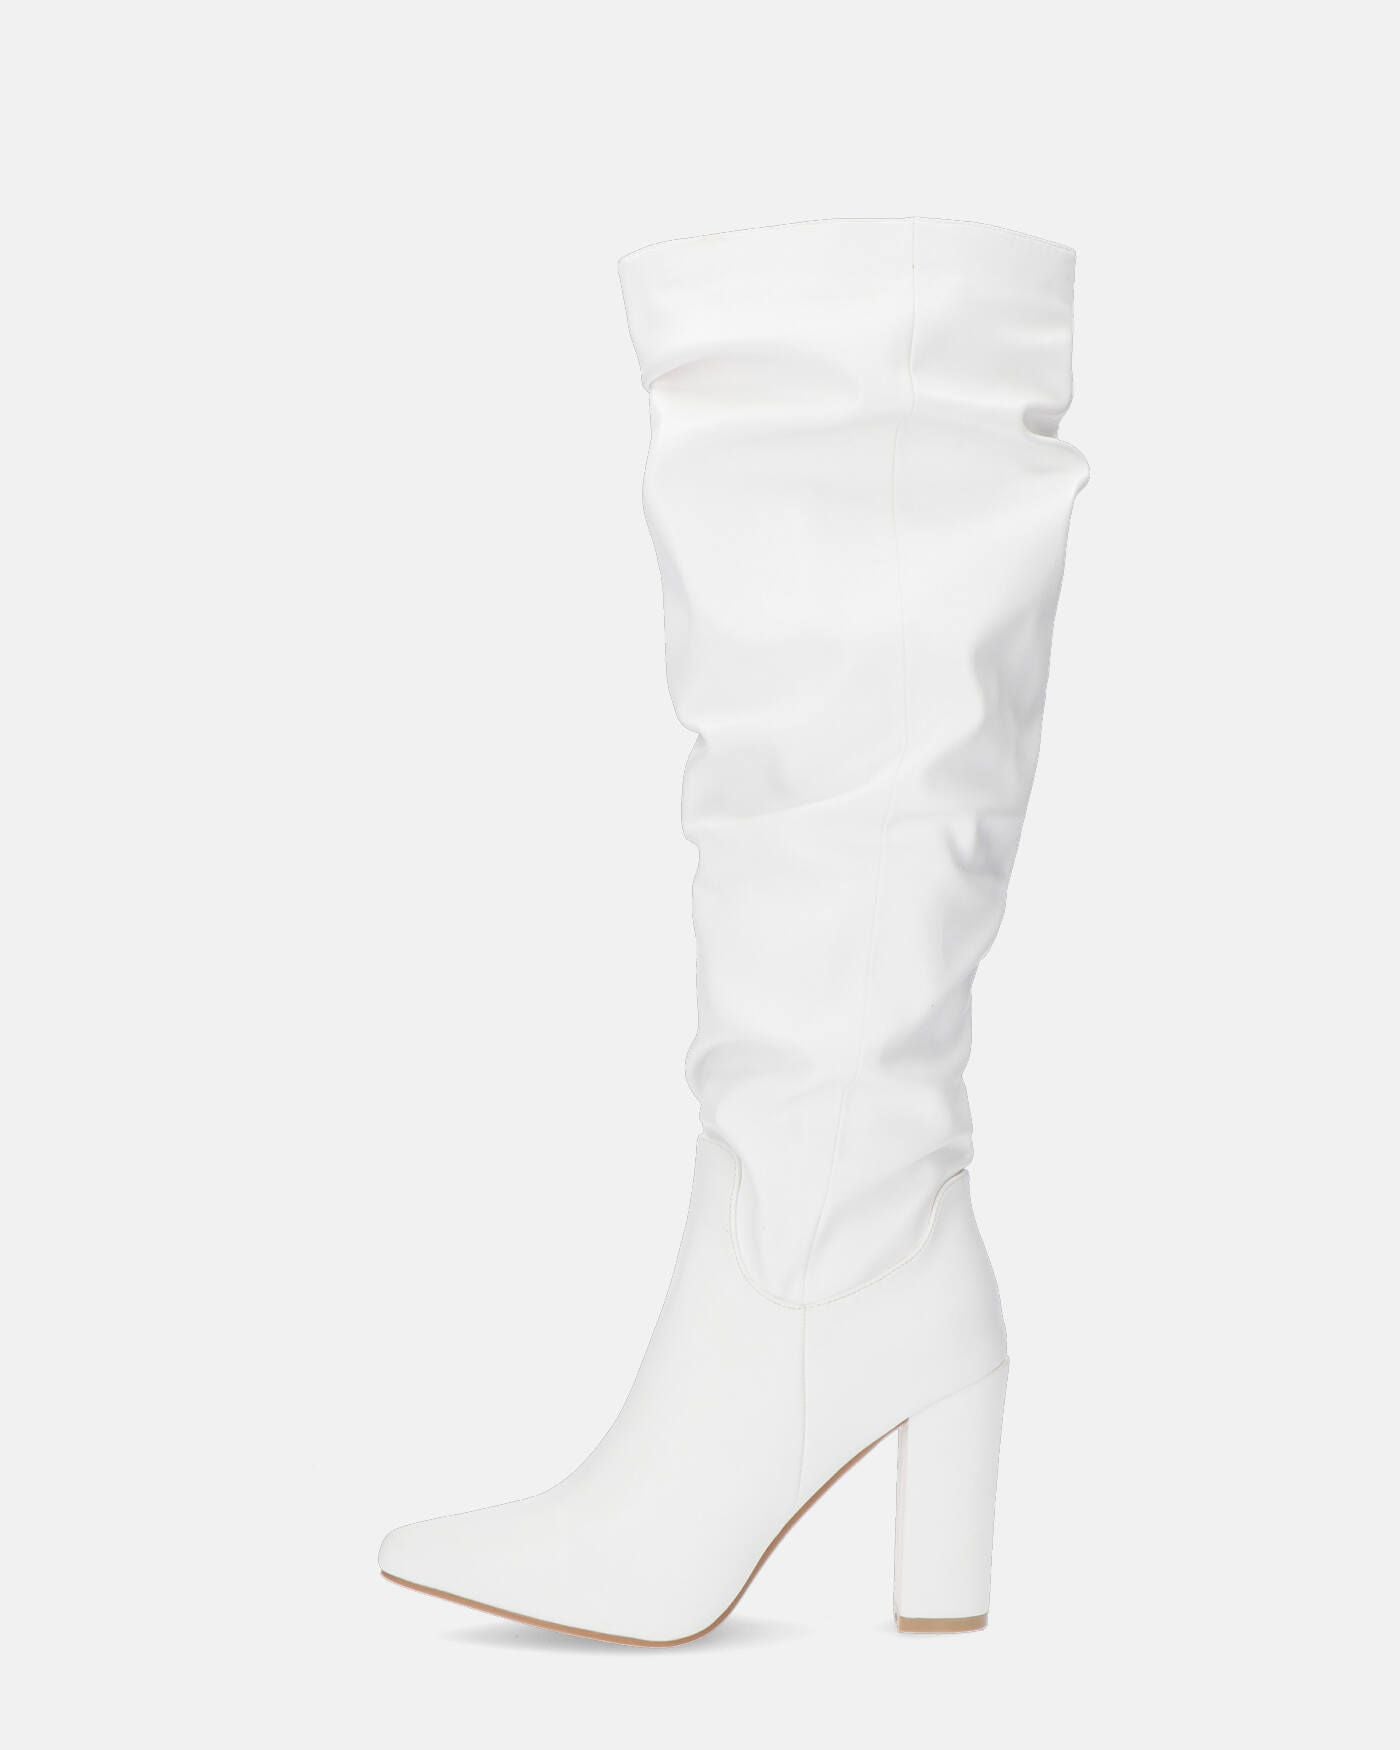 JONITTA - high boot in white pu